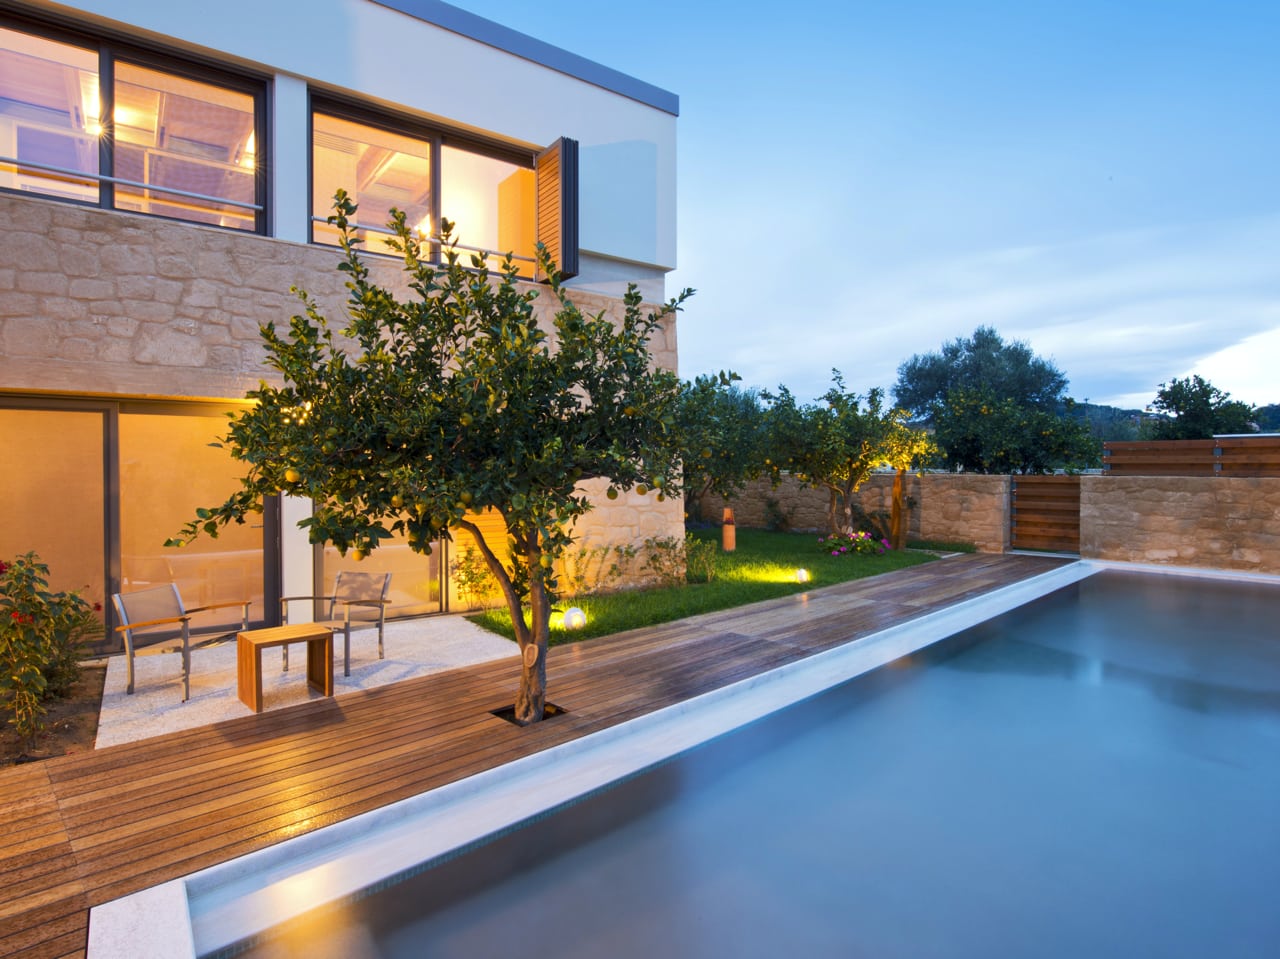 World Travel Awards 2016 – Conte Marino Villas - Winner For Greece’s Leading Luxury Private Villa